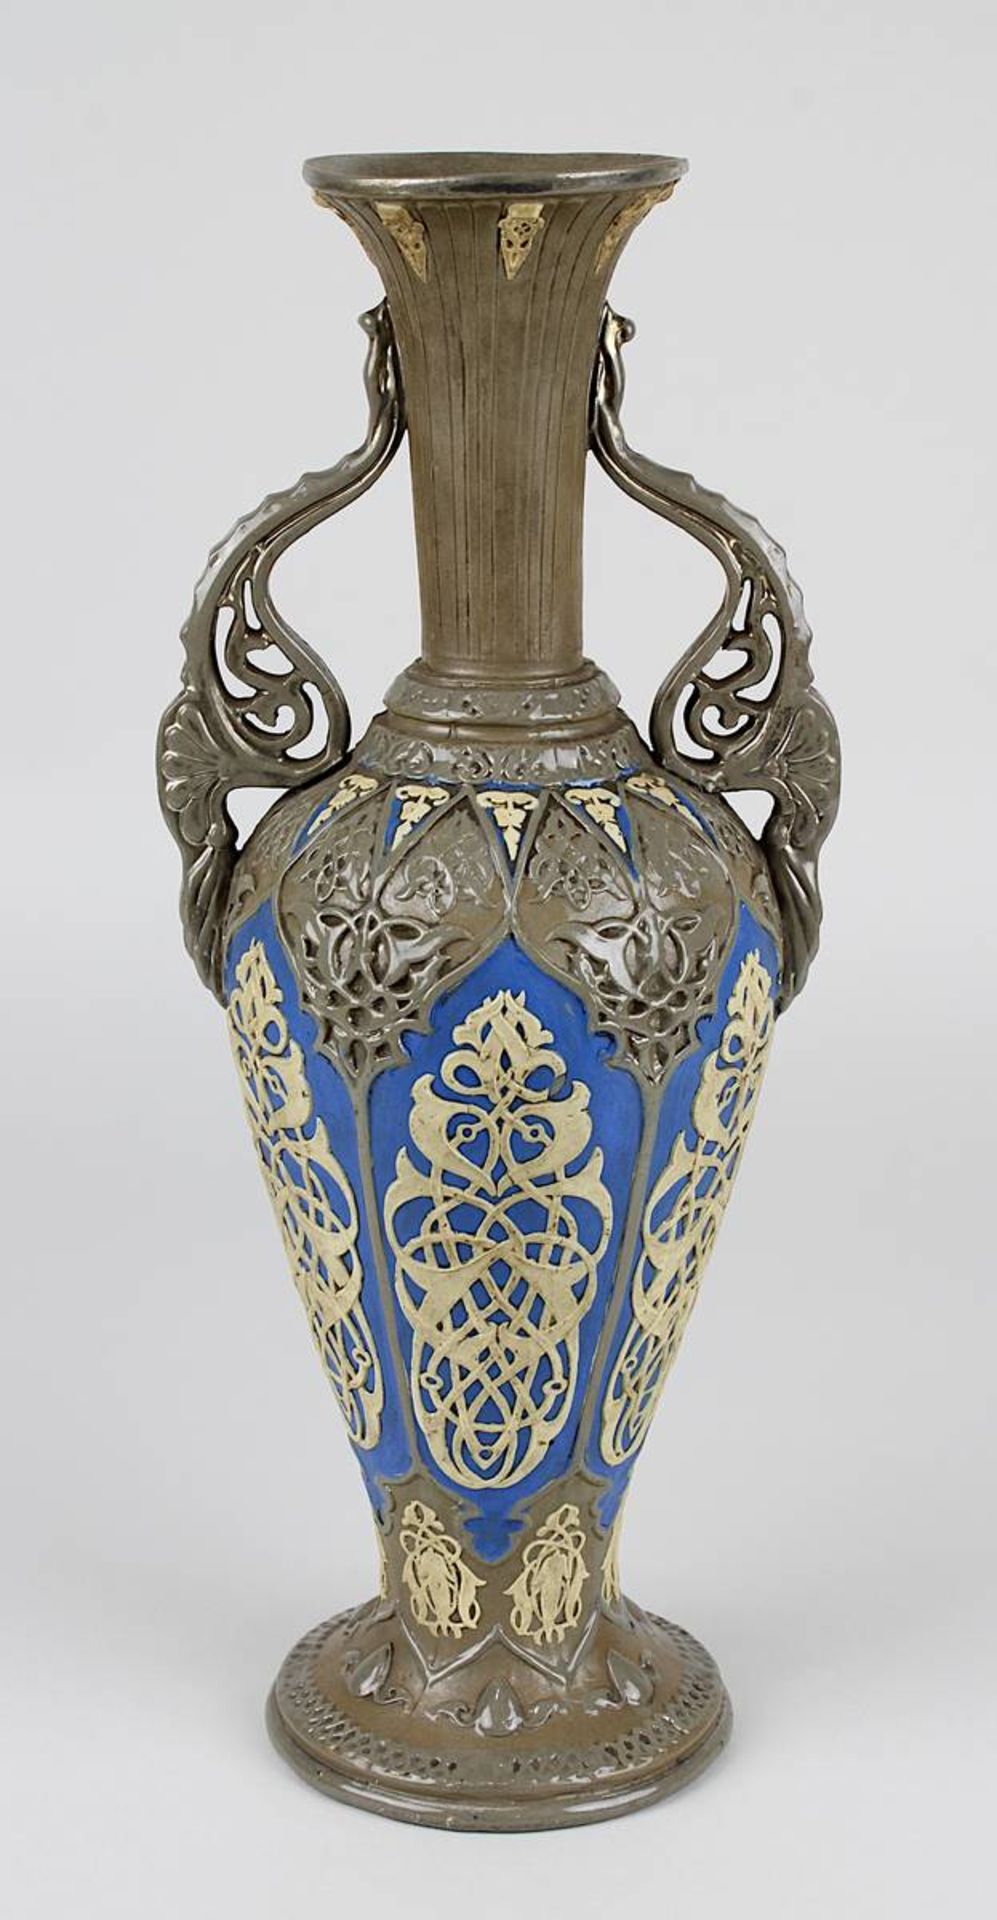 Vase, Villeroy & Boch um 1860, Steingut, braungrauer Scherben, balusterförmiger Korpus mit farbigem,